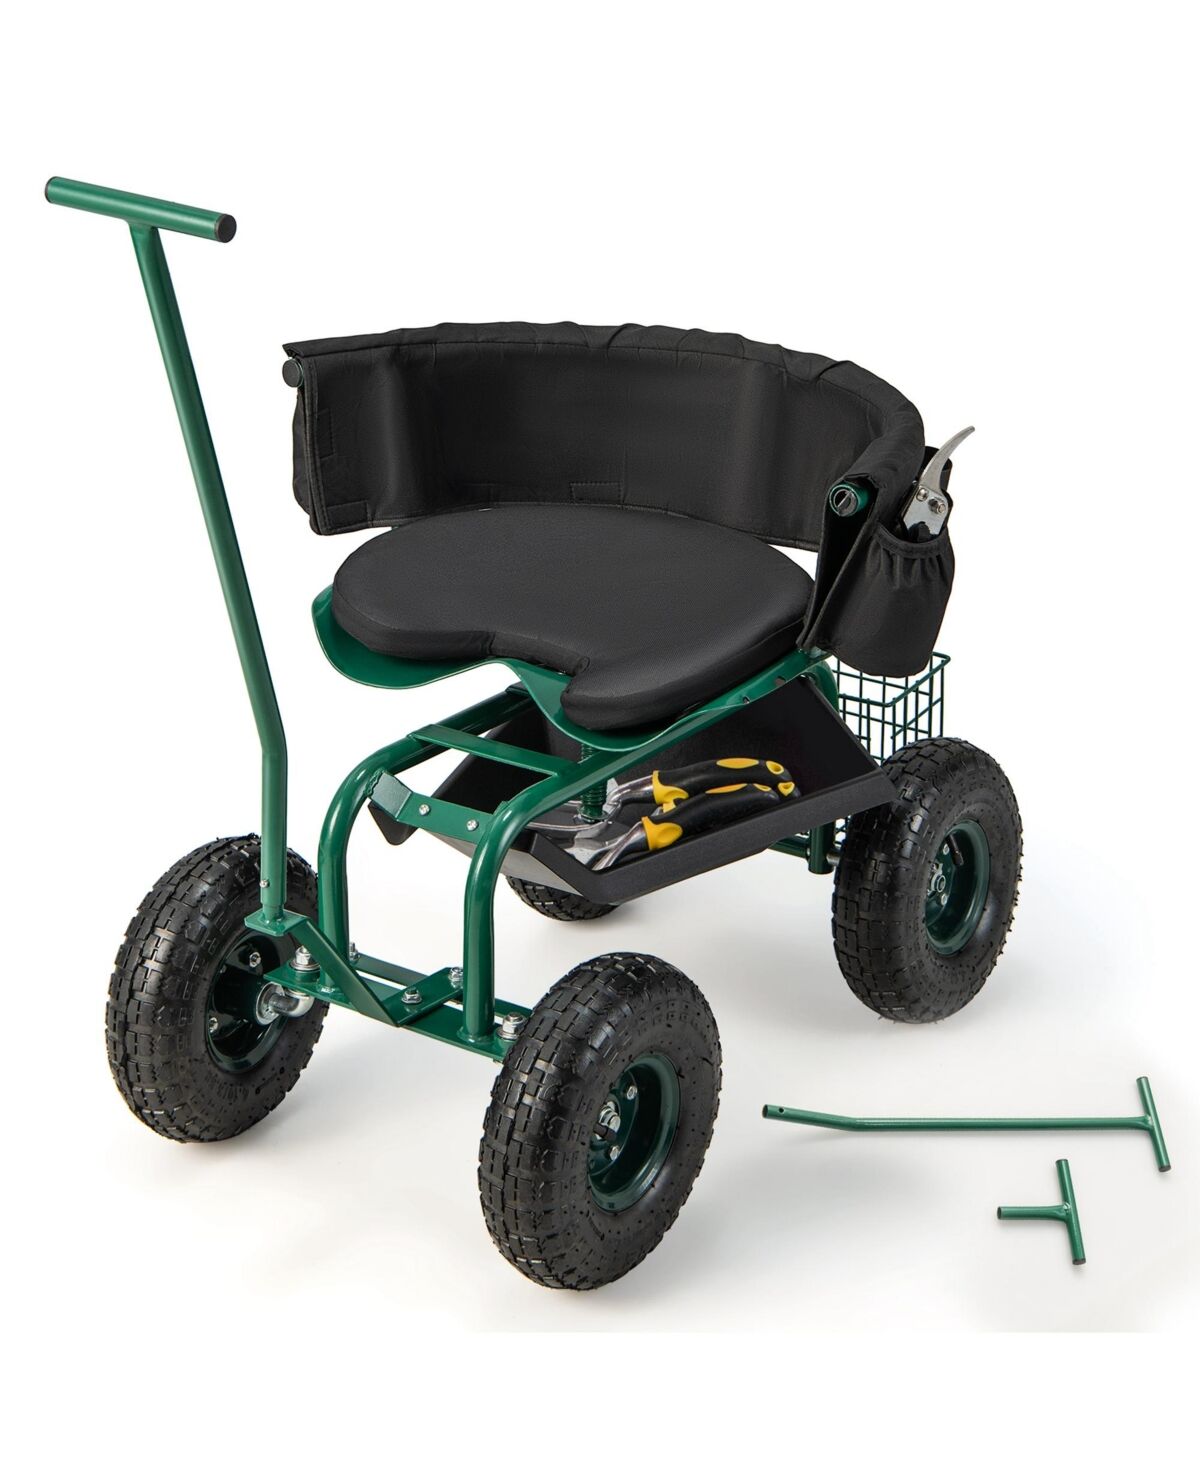 Costway Rolling Garden Cart Outdoor Gardening Workseat with Adjustable Height &Tool Storage - Green